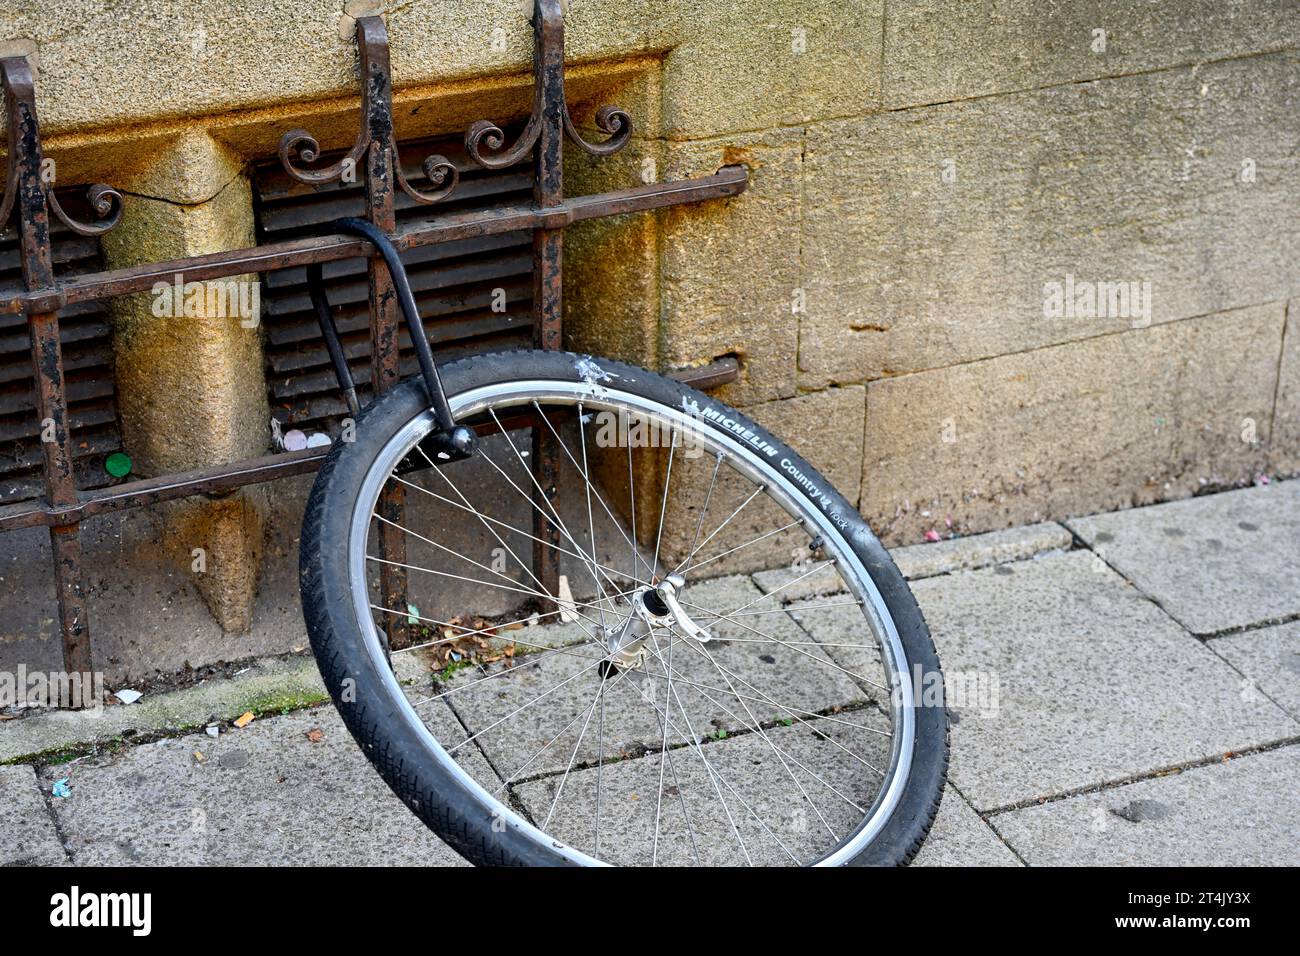 La roue avant du vélo est restée verrouillée à la grille lorsque le vélo a été volé de la position de verrouillage par le bâtiment, Oxford Banque D'Images